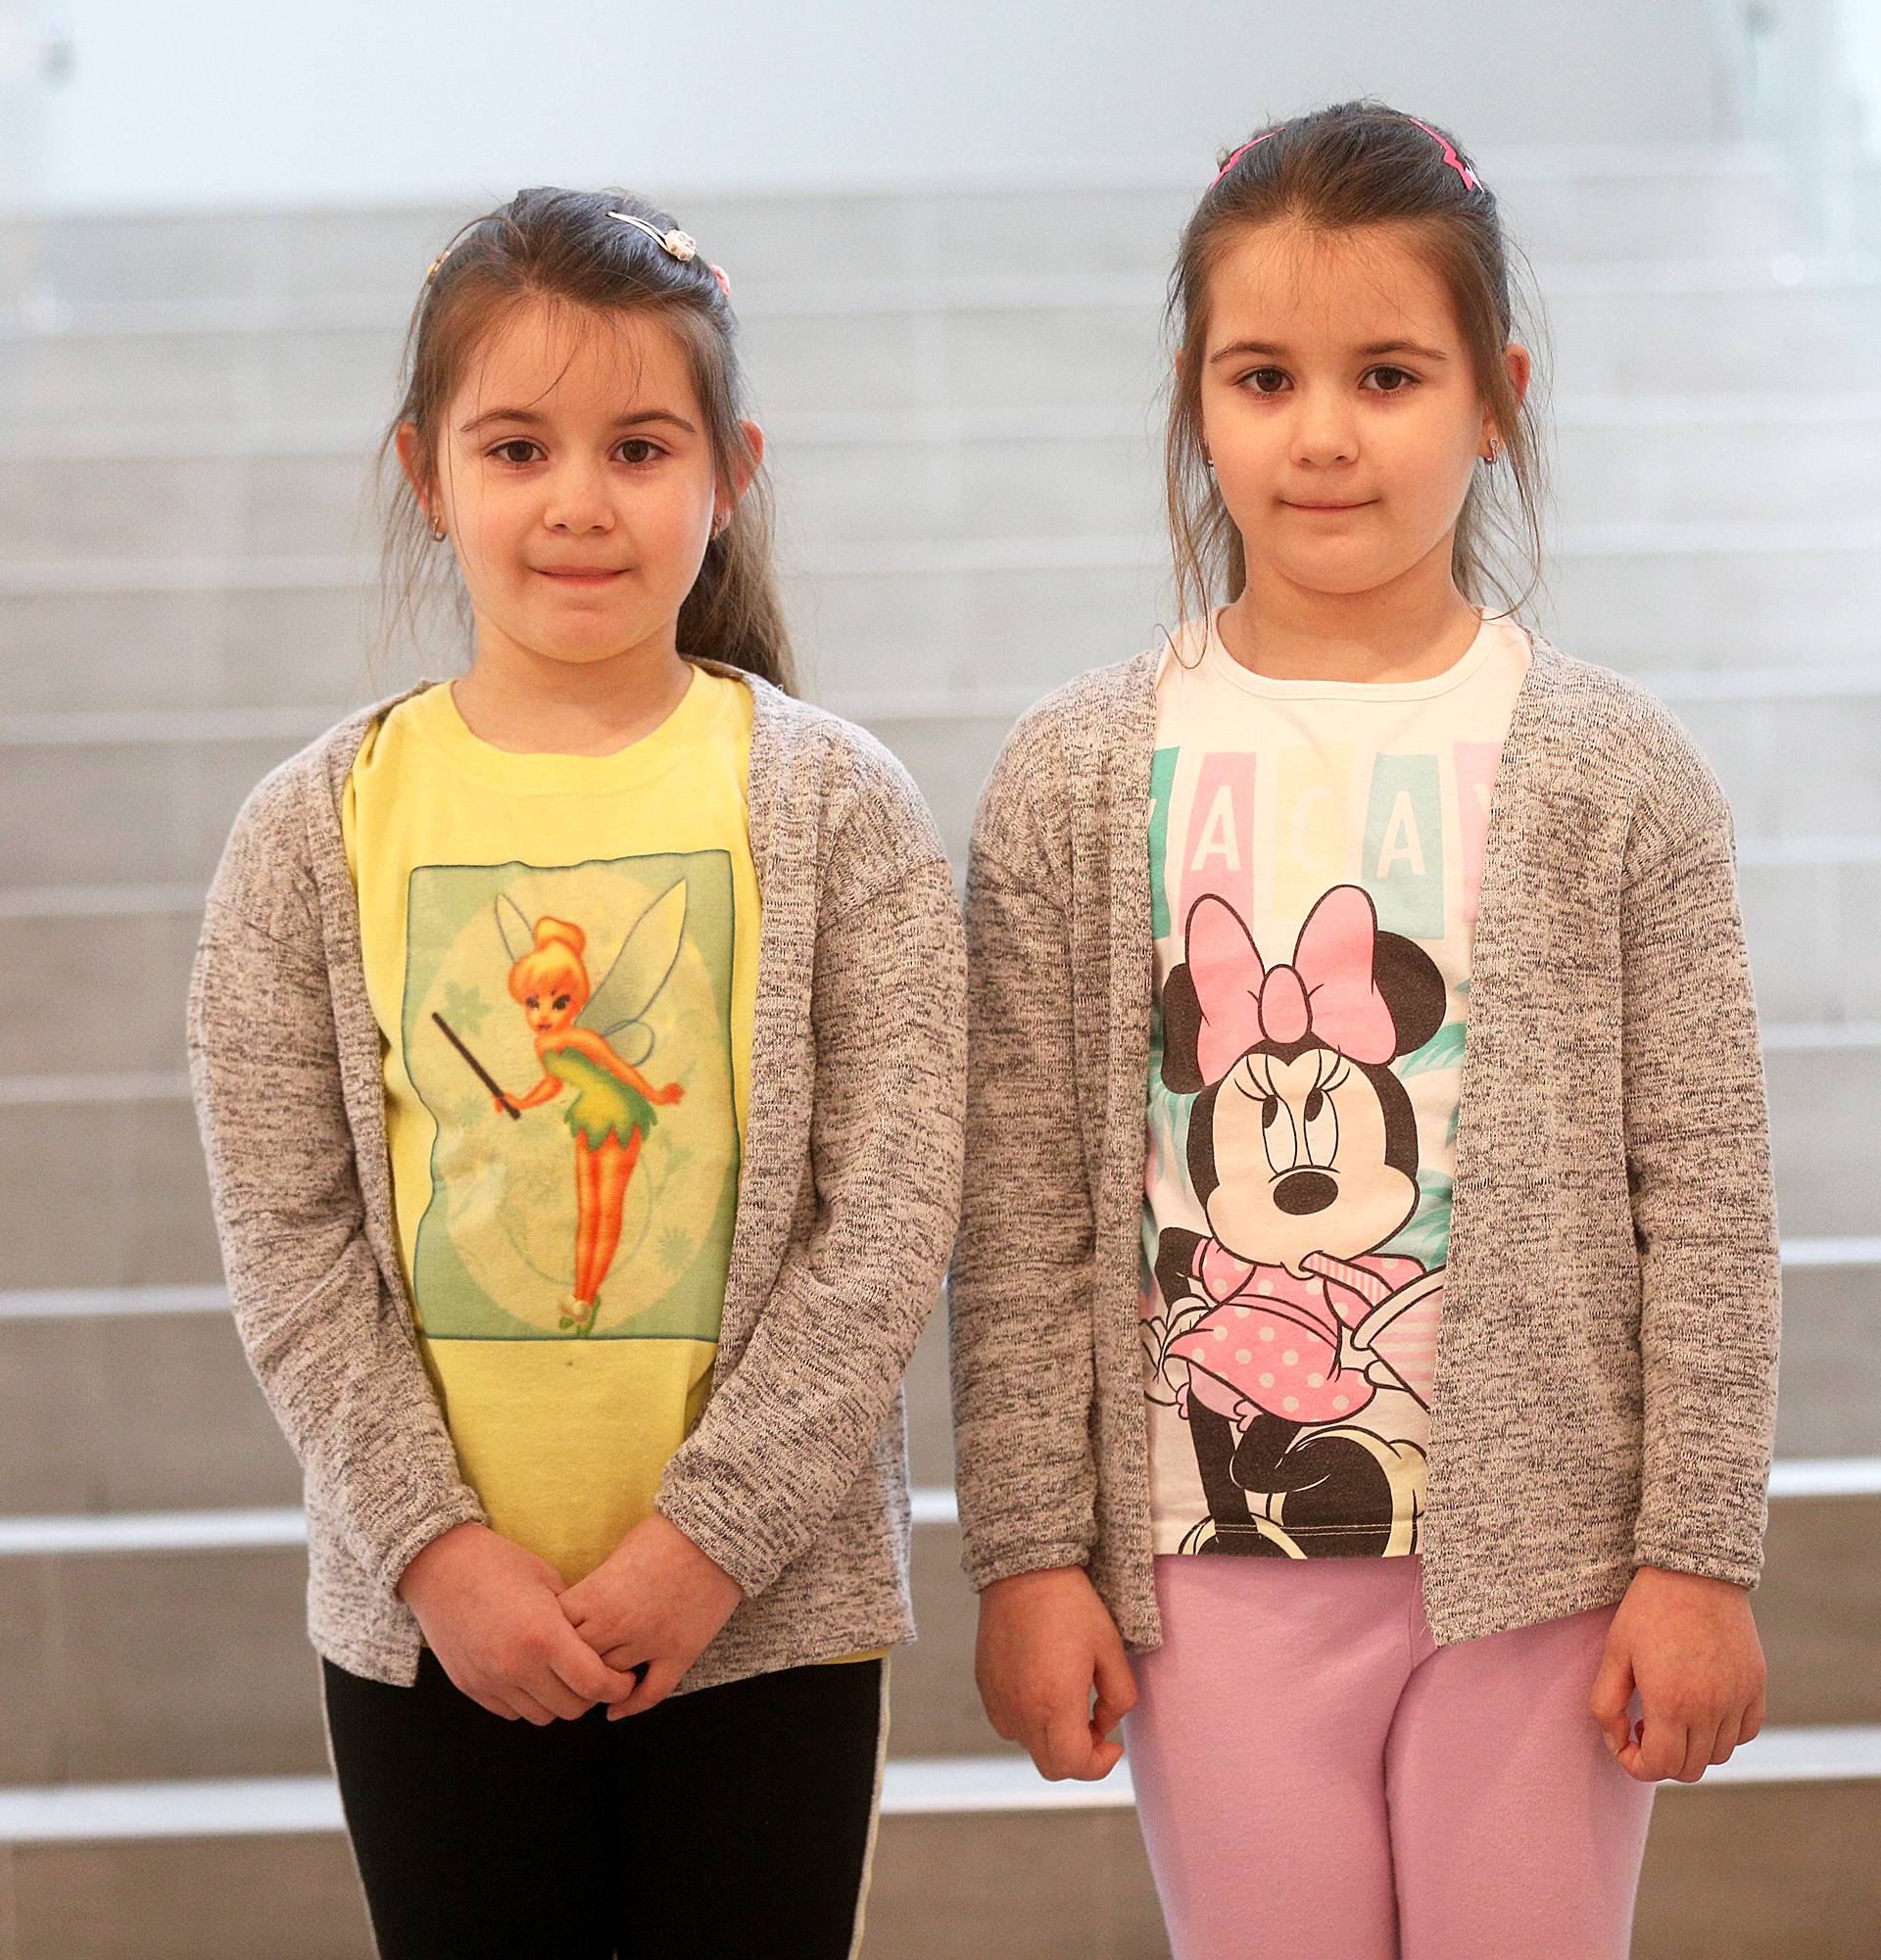 Škola u Odri broji 11 parova blizanaca: 'Nije nam neobično'